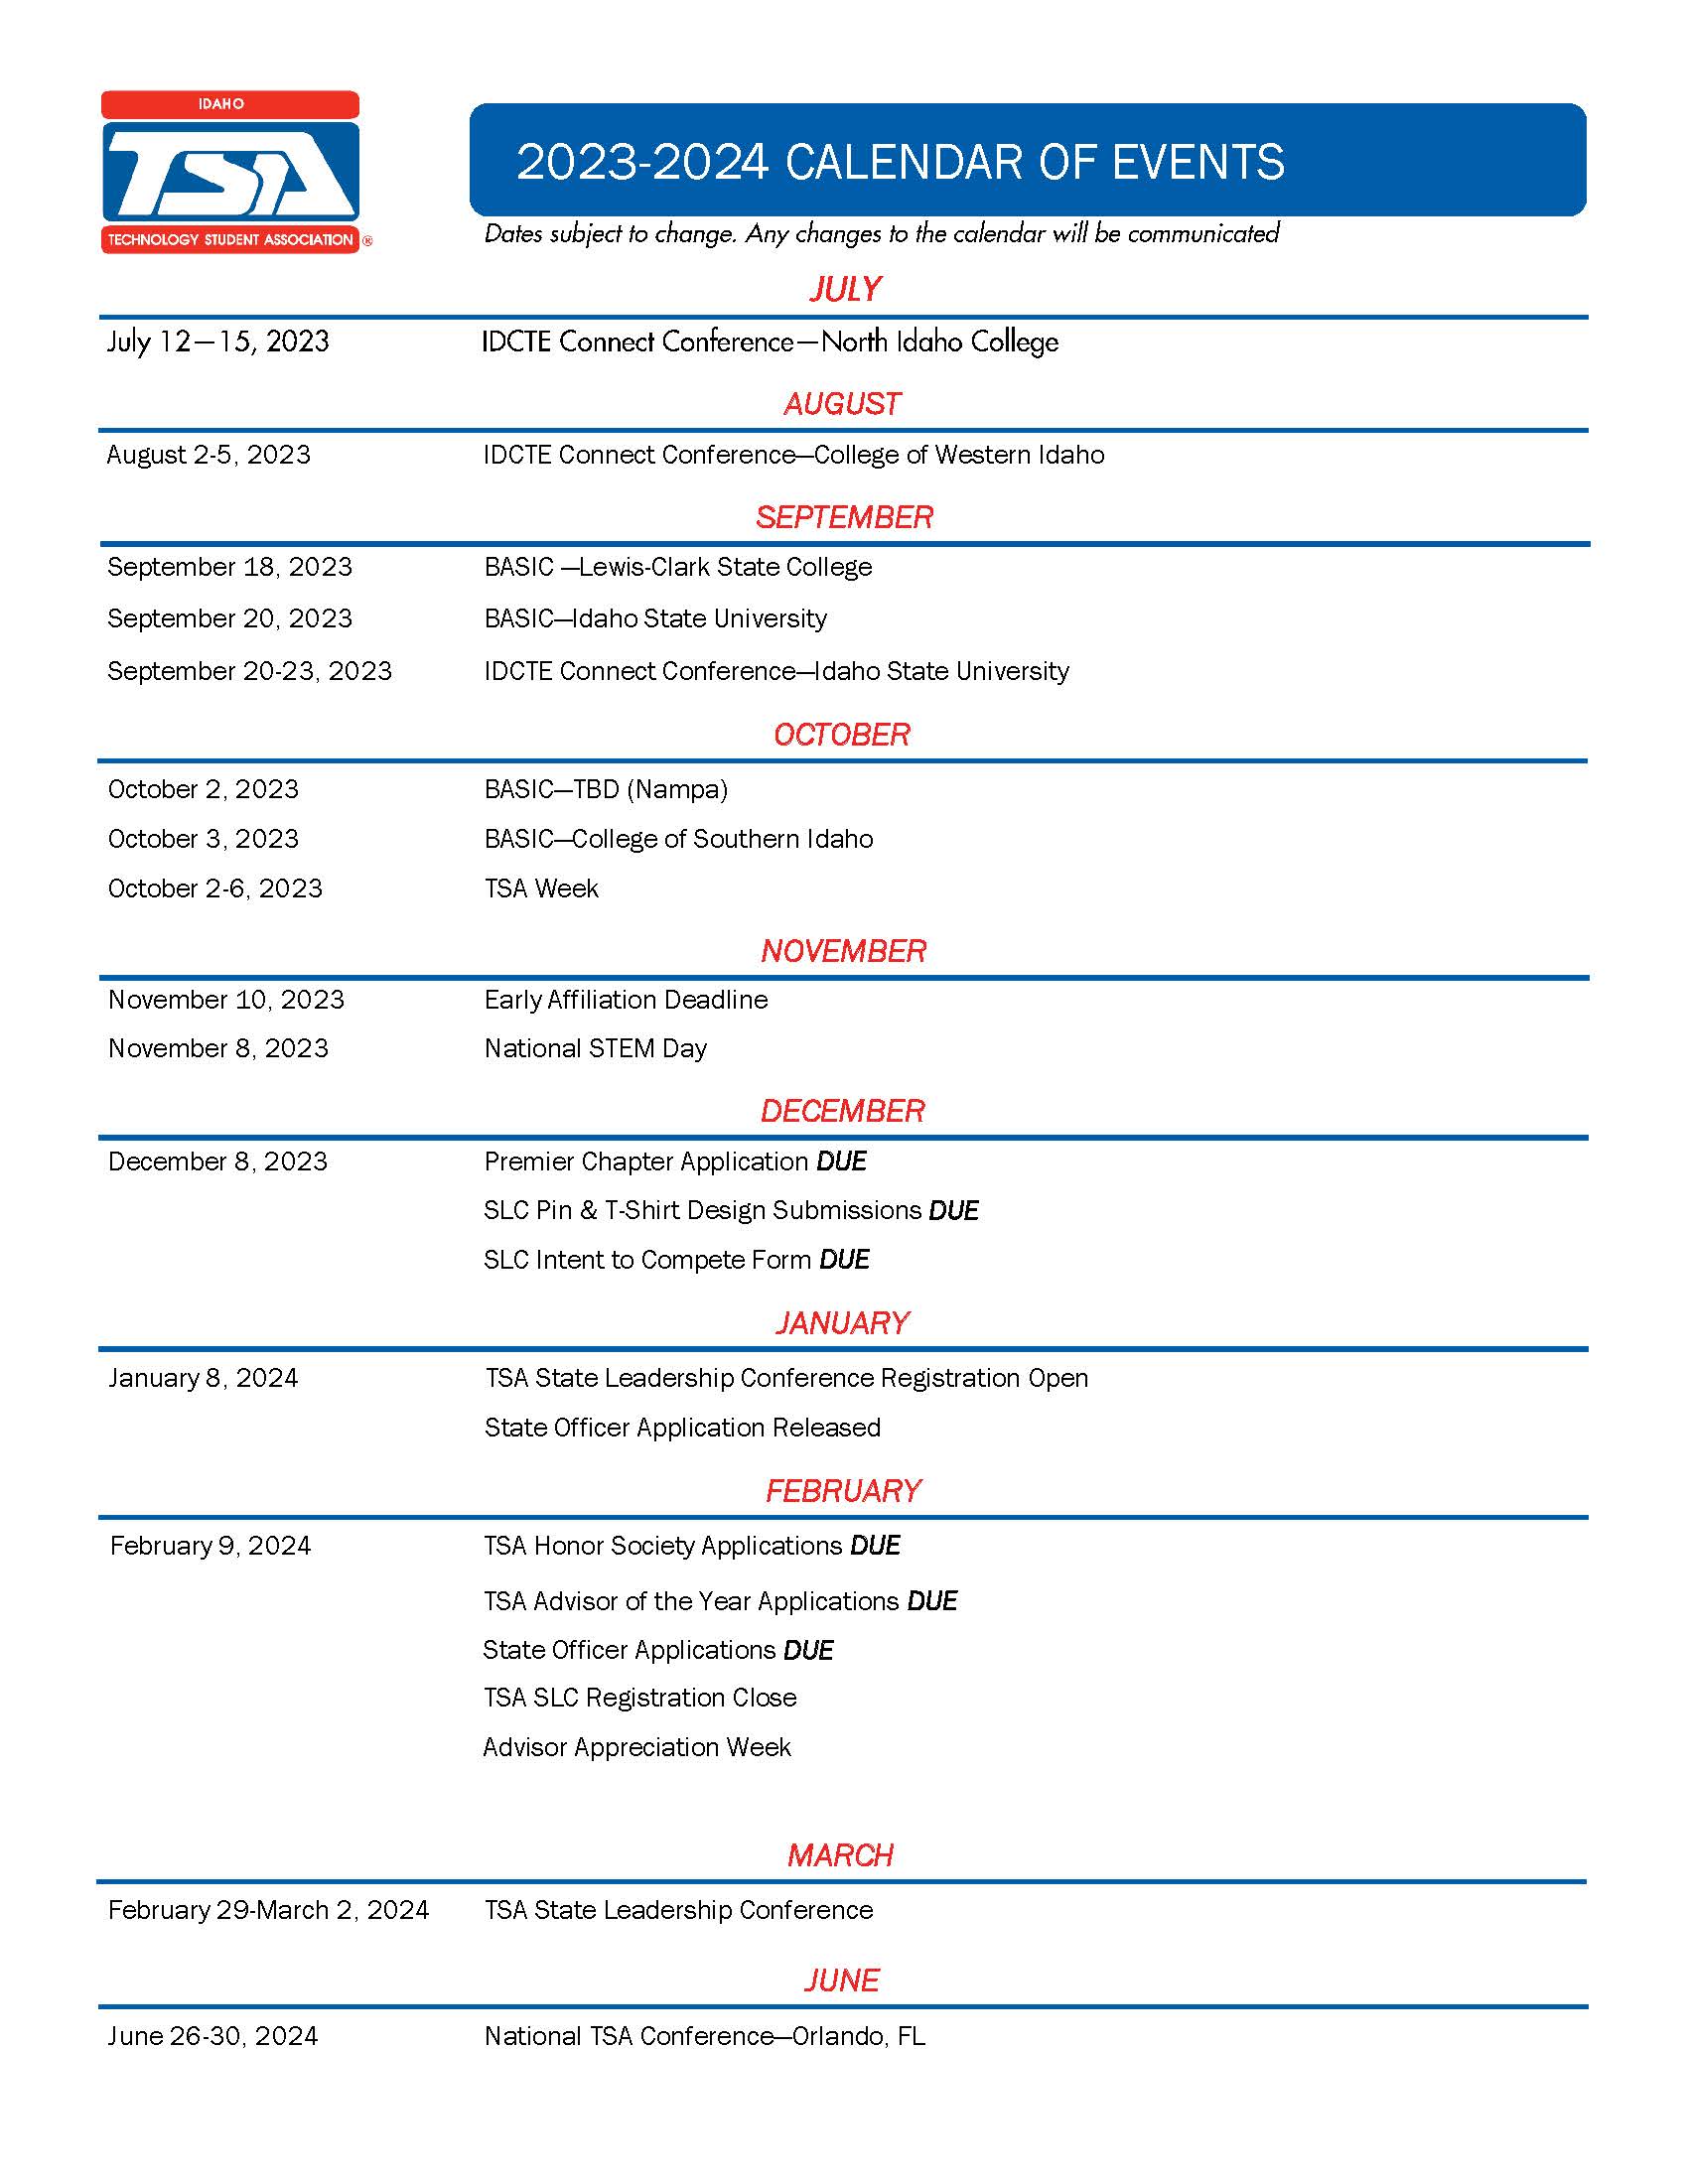 2023-2024 Idaho TSA Calendar of Events